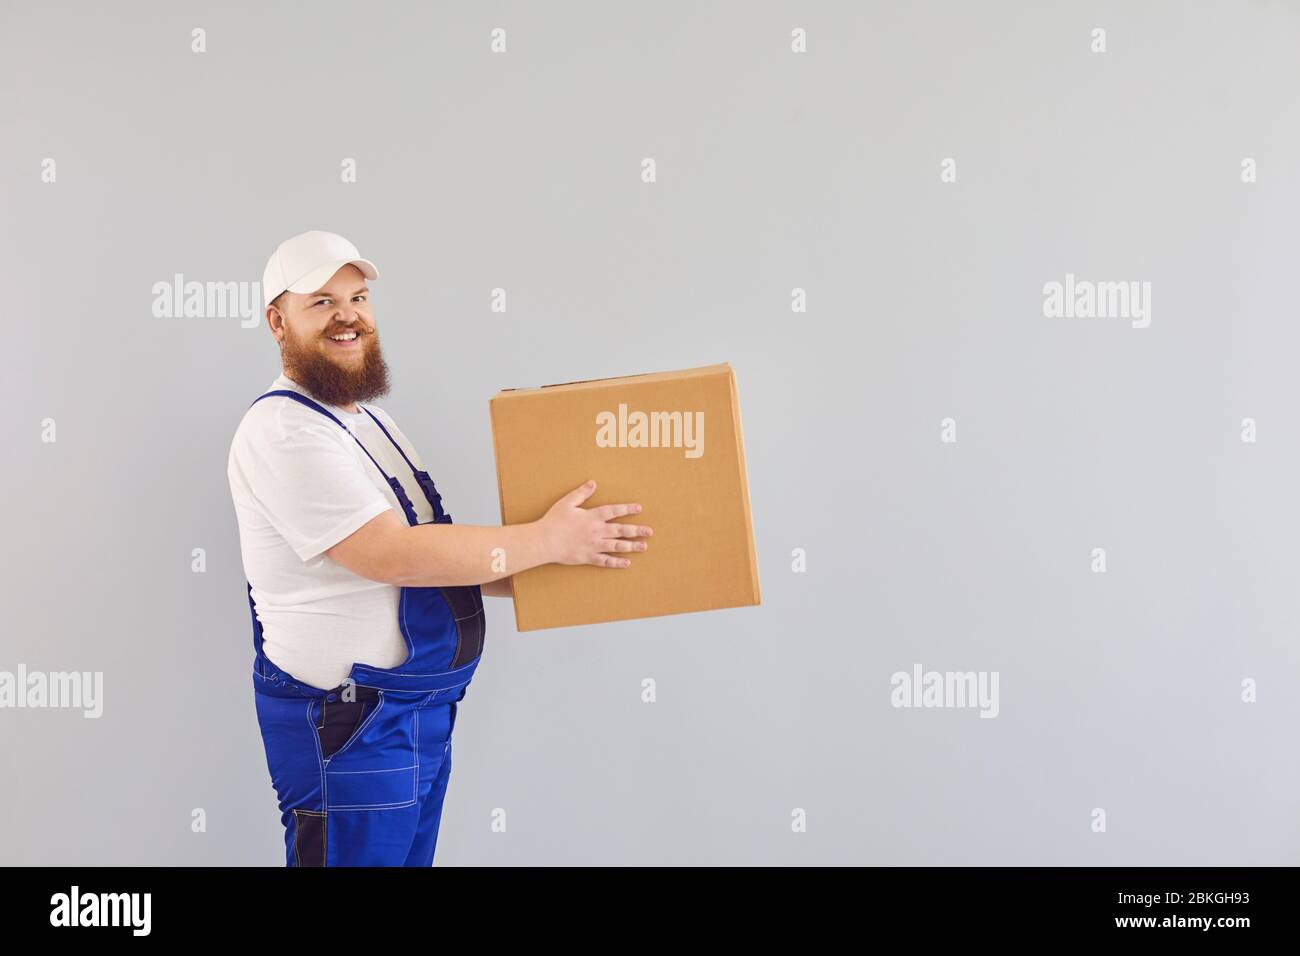 Lustige fette bärtige Lieferung Kurier Lader Mann in einer blauen Uniform mit einem Karton auf einem grauen Hintergrund. Stockfoto